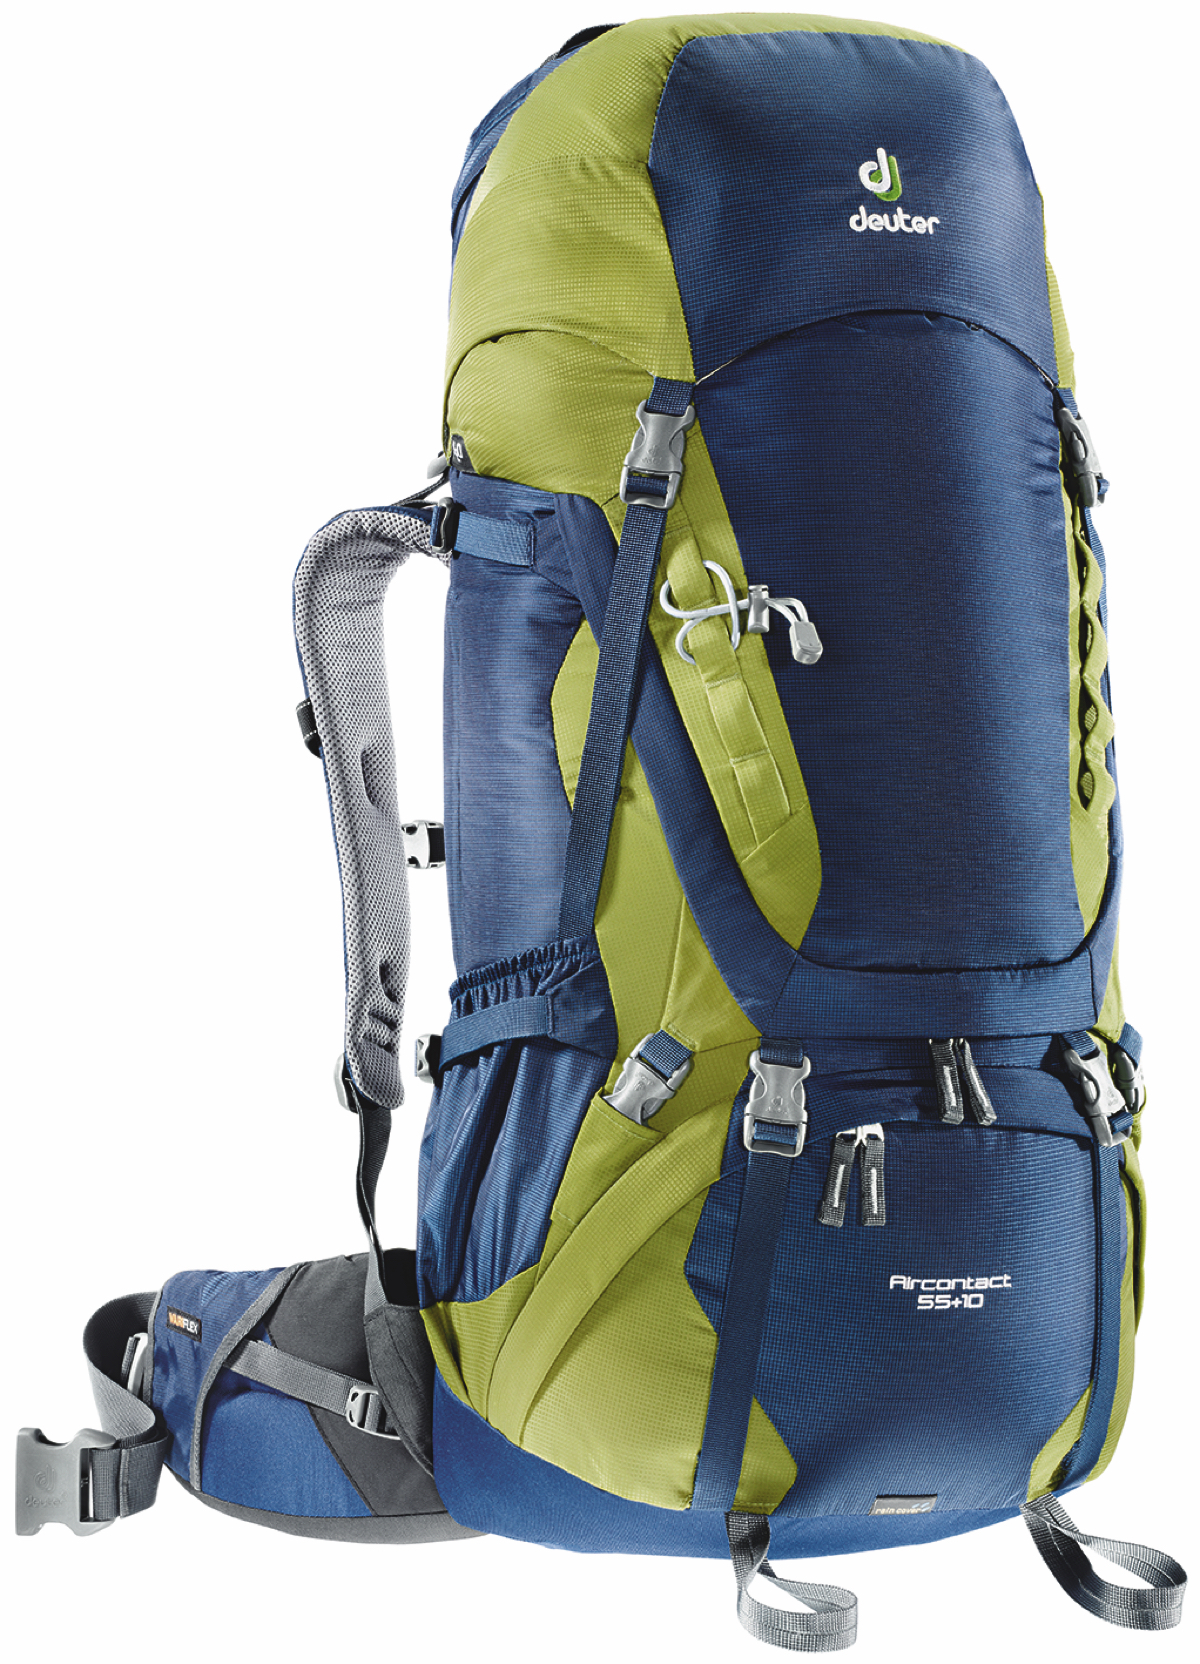 Deuter - AirContact 55+10 - Backpack